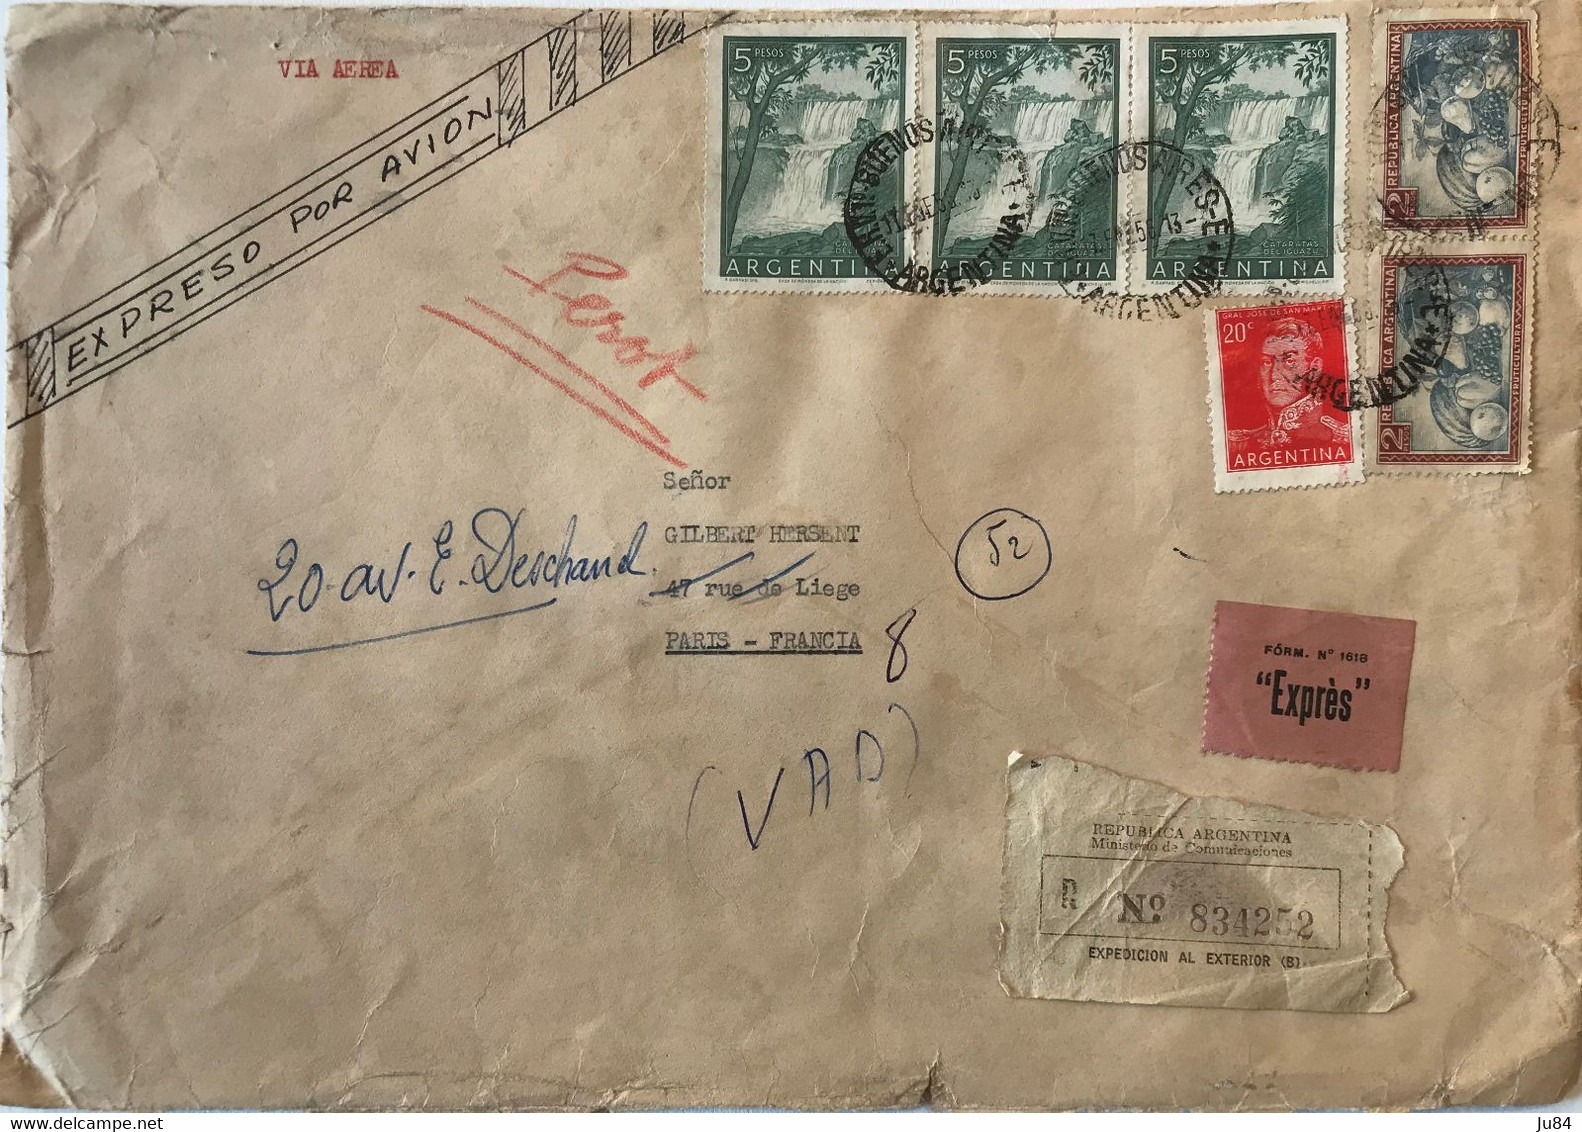 Argentine - Buenos Aires - Lettre Recommandée Avion Express Pour Paris (France) - Bel Affranchissement - 1956 - Used Stamps